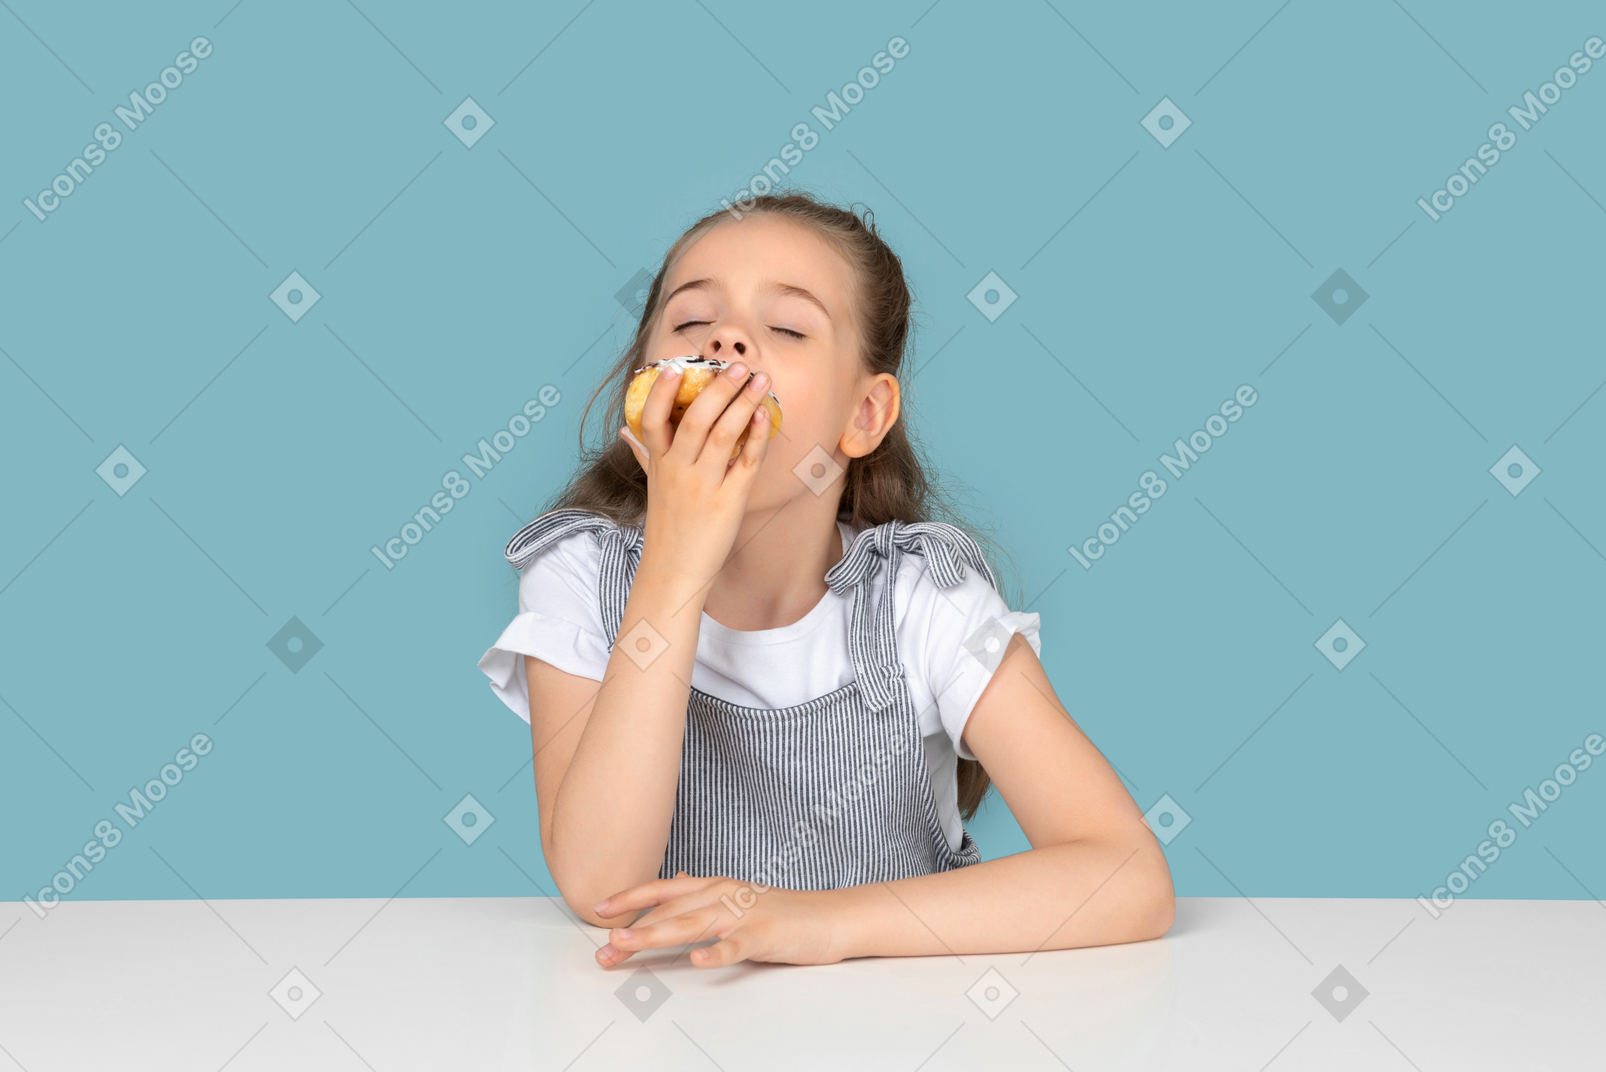 Cute little girl enjoying a doughnut